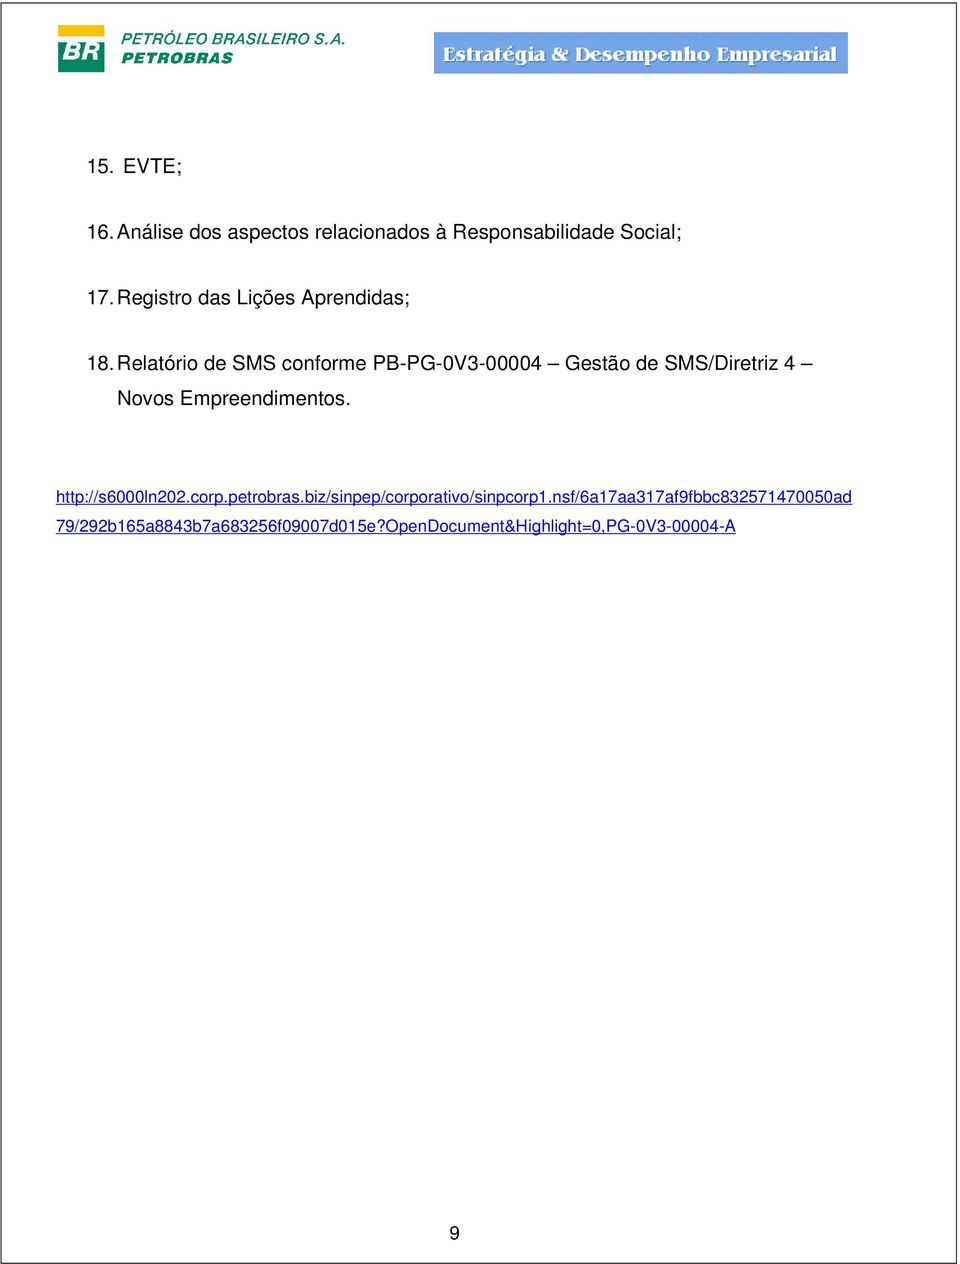 Relatório de SMS conforme PB-PG-0V3-00004 Gestão de SMS/Diretriz 4 Novos Empreendimentos.